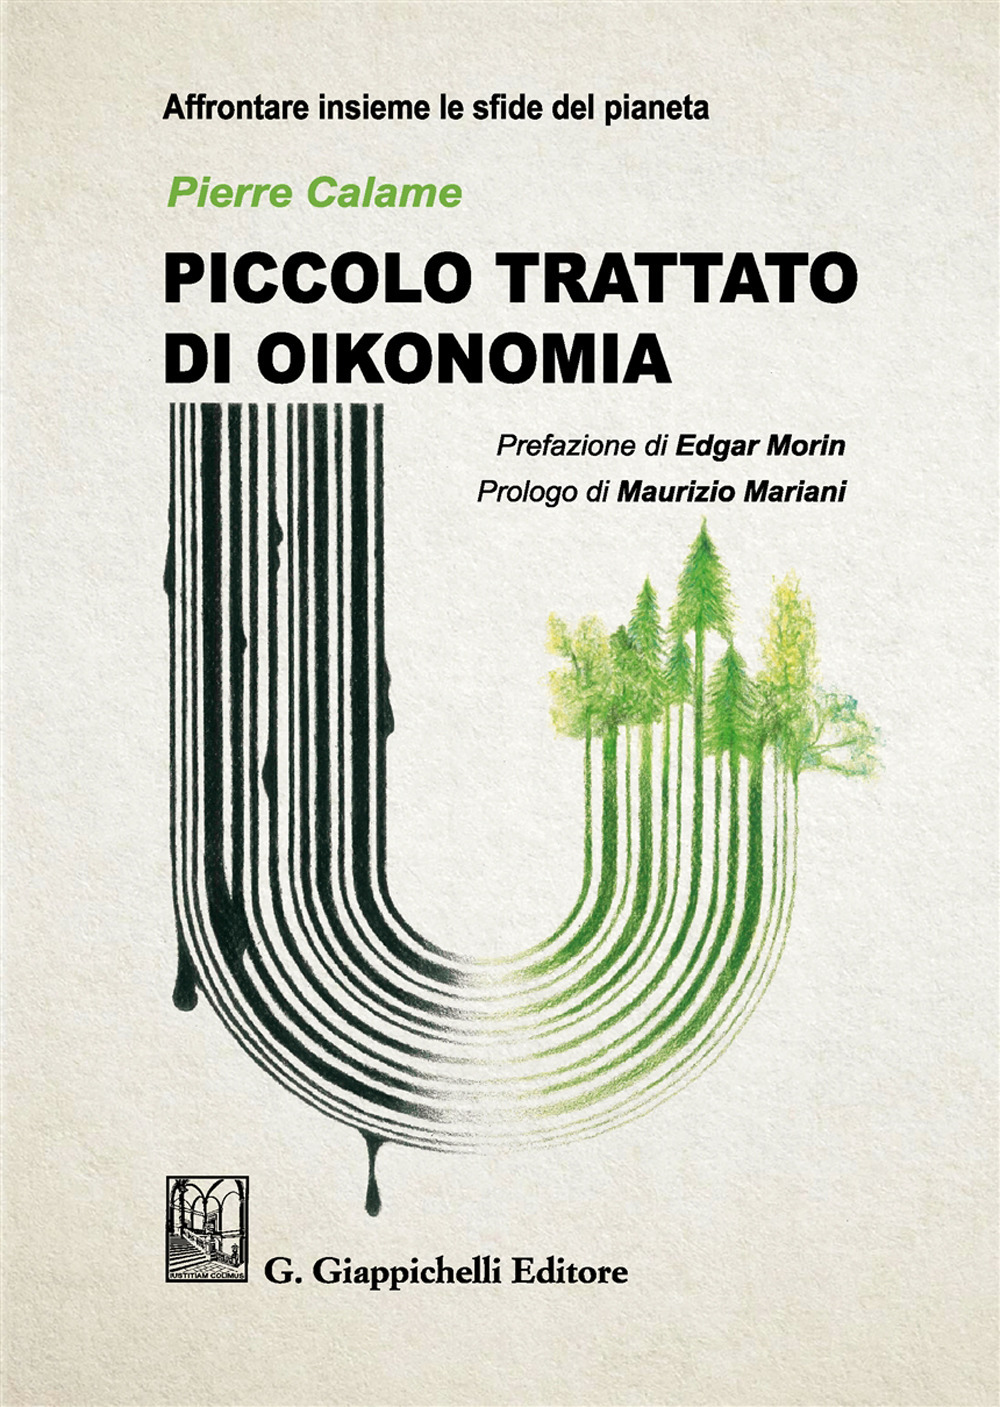 Image of Piccolo trattato di oikonomia